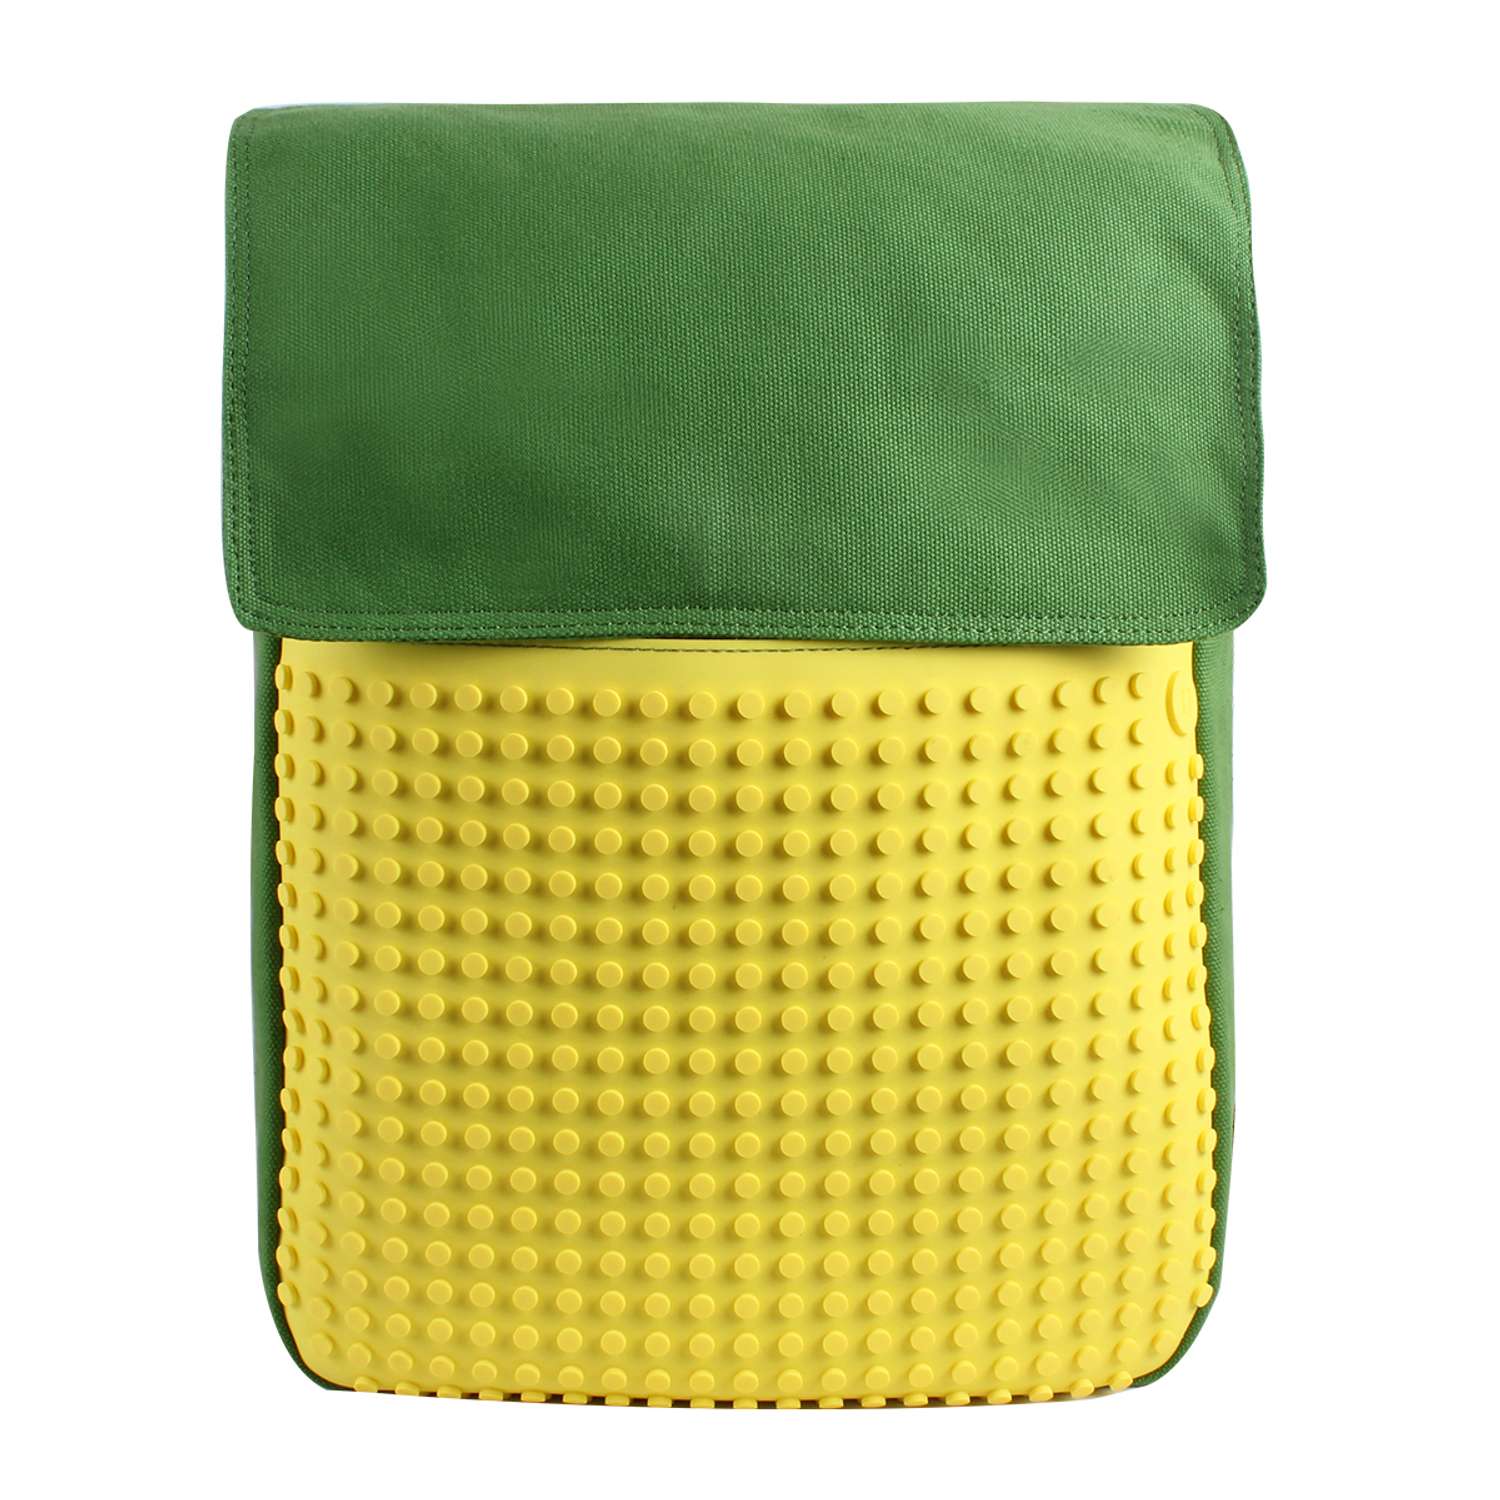 Пиксельный рюкзак Upixel зеленый-желтый - фото 5